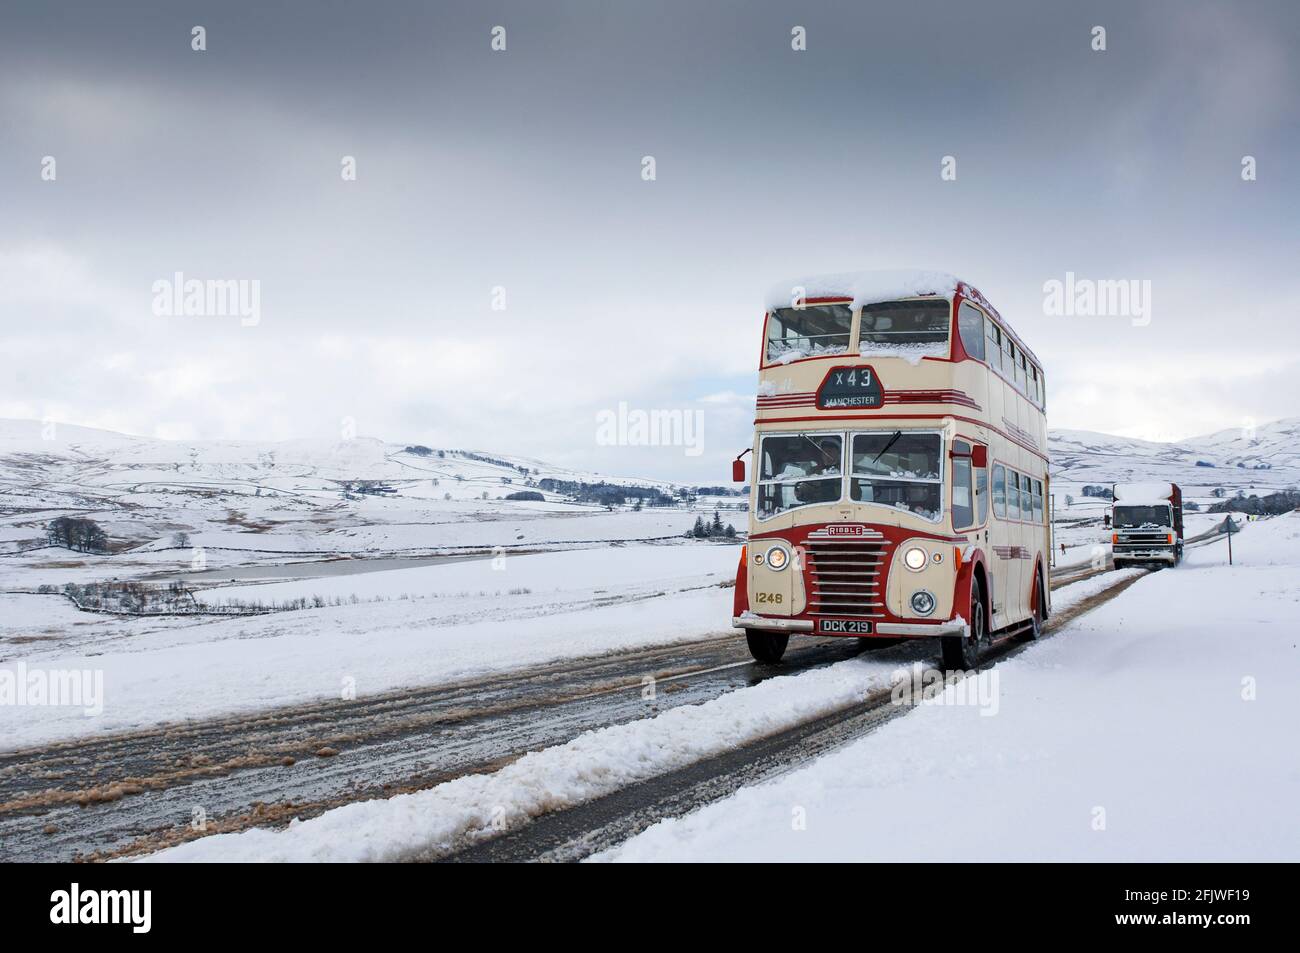 Clásico autobús de dos pisos Ribble que conduce a lo largo de una carretera nevada en Cumbria cerca de Ravenstonedale en el A684, Reino Unido. Foto de stock